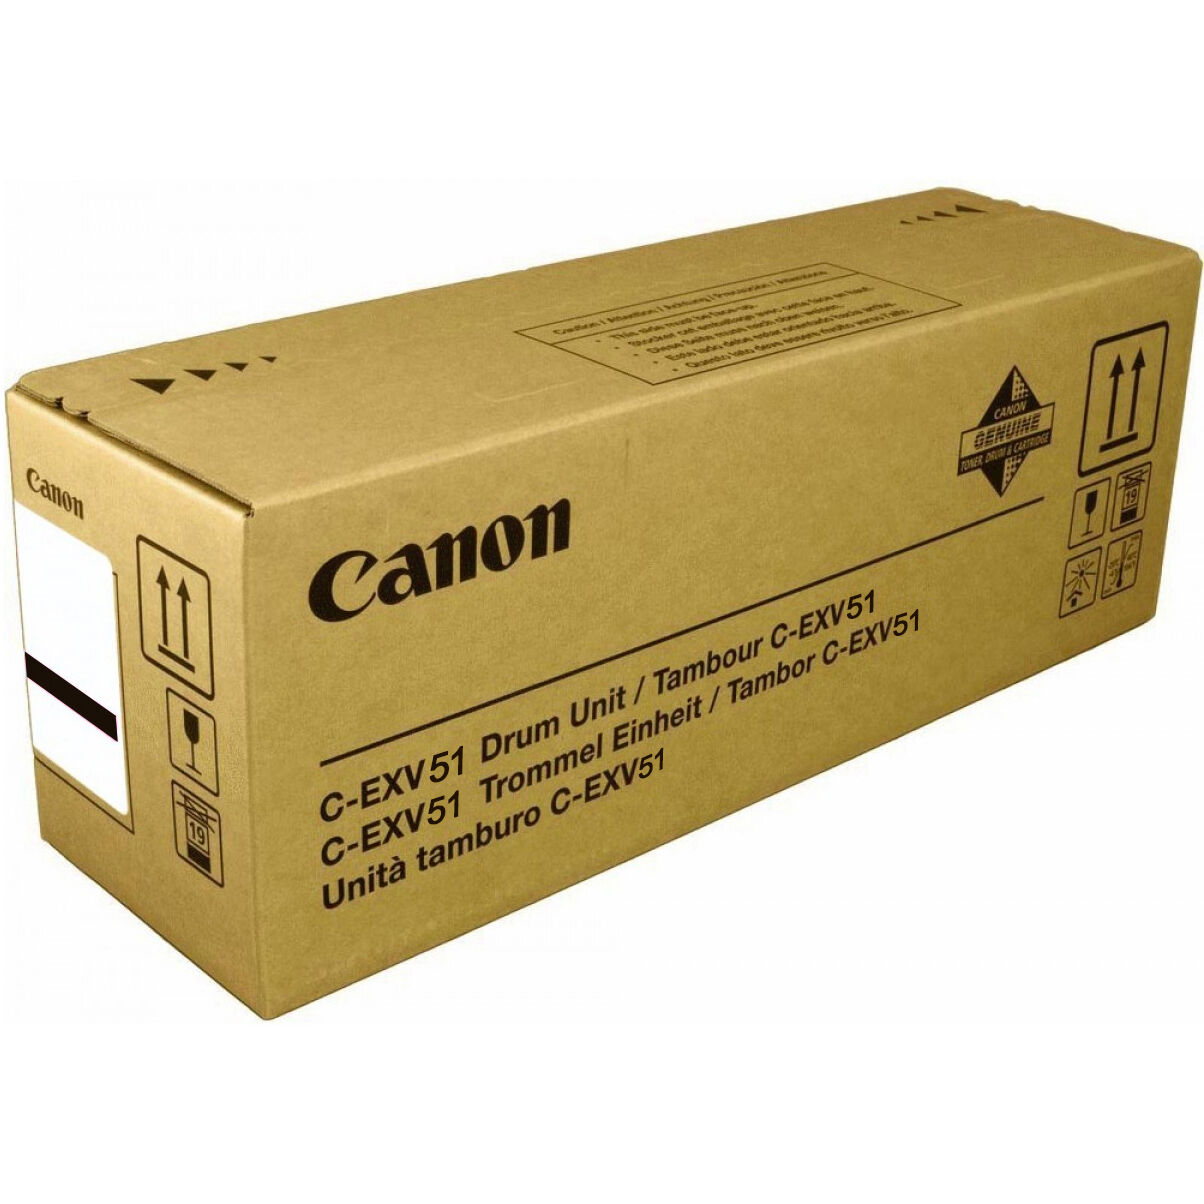 Картридж для печати Canon Фотобарабан Canon C-EXV 51 0488C002 вид печати лазерный, цвет Черный, емкость